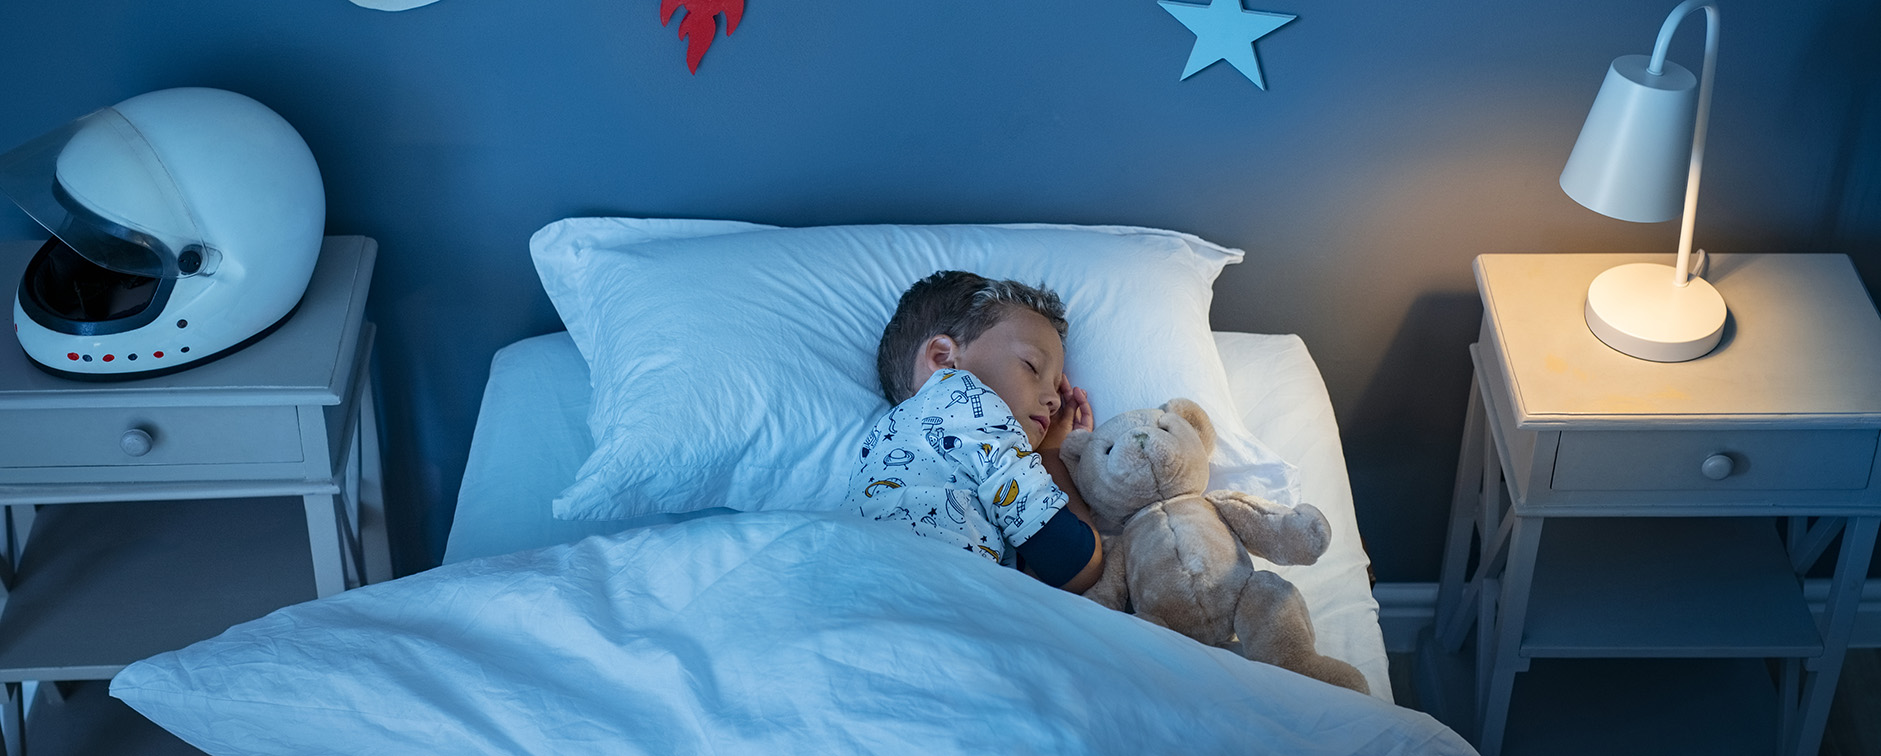 importance du sommeil pour developpement des enfants